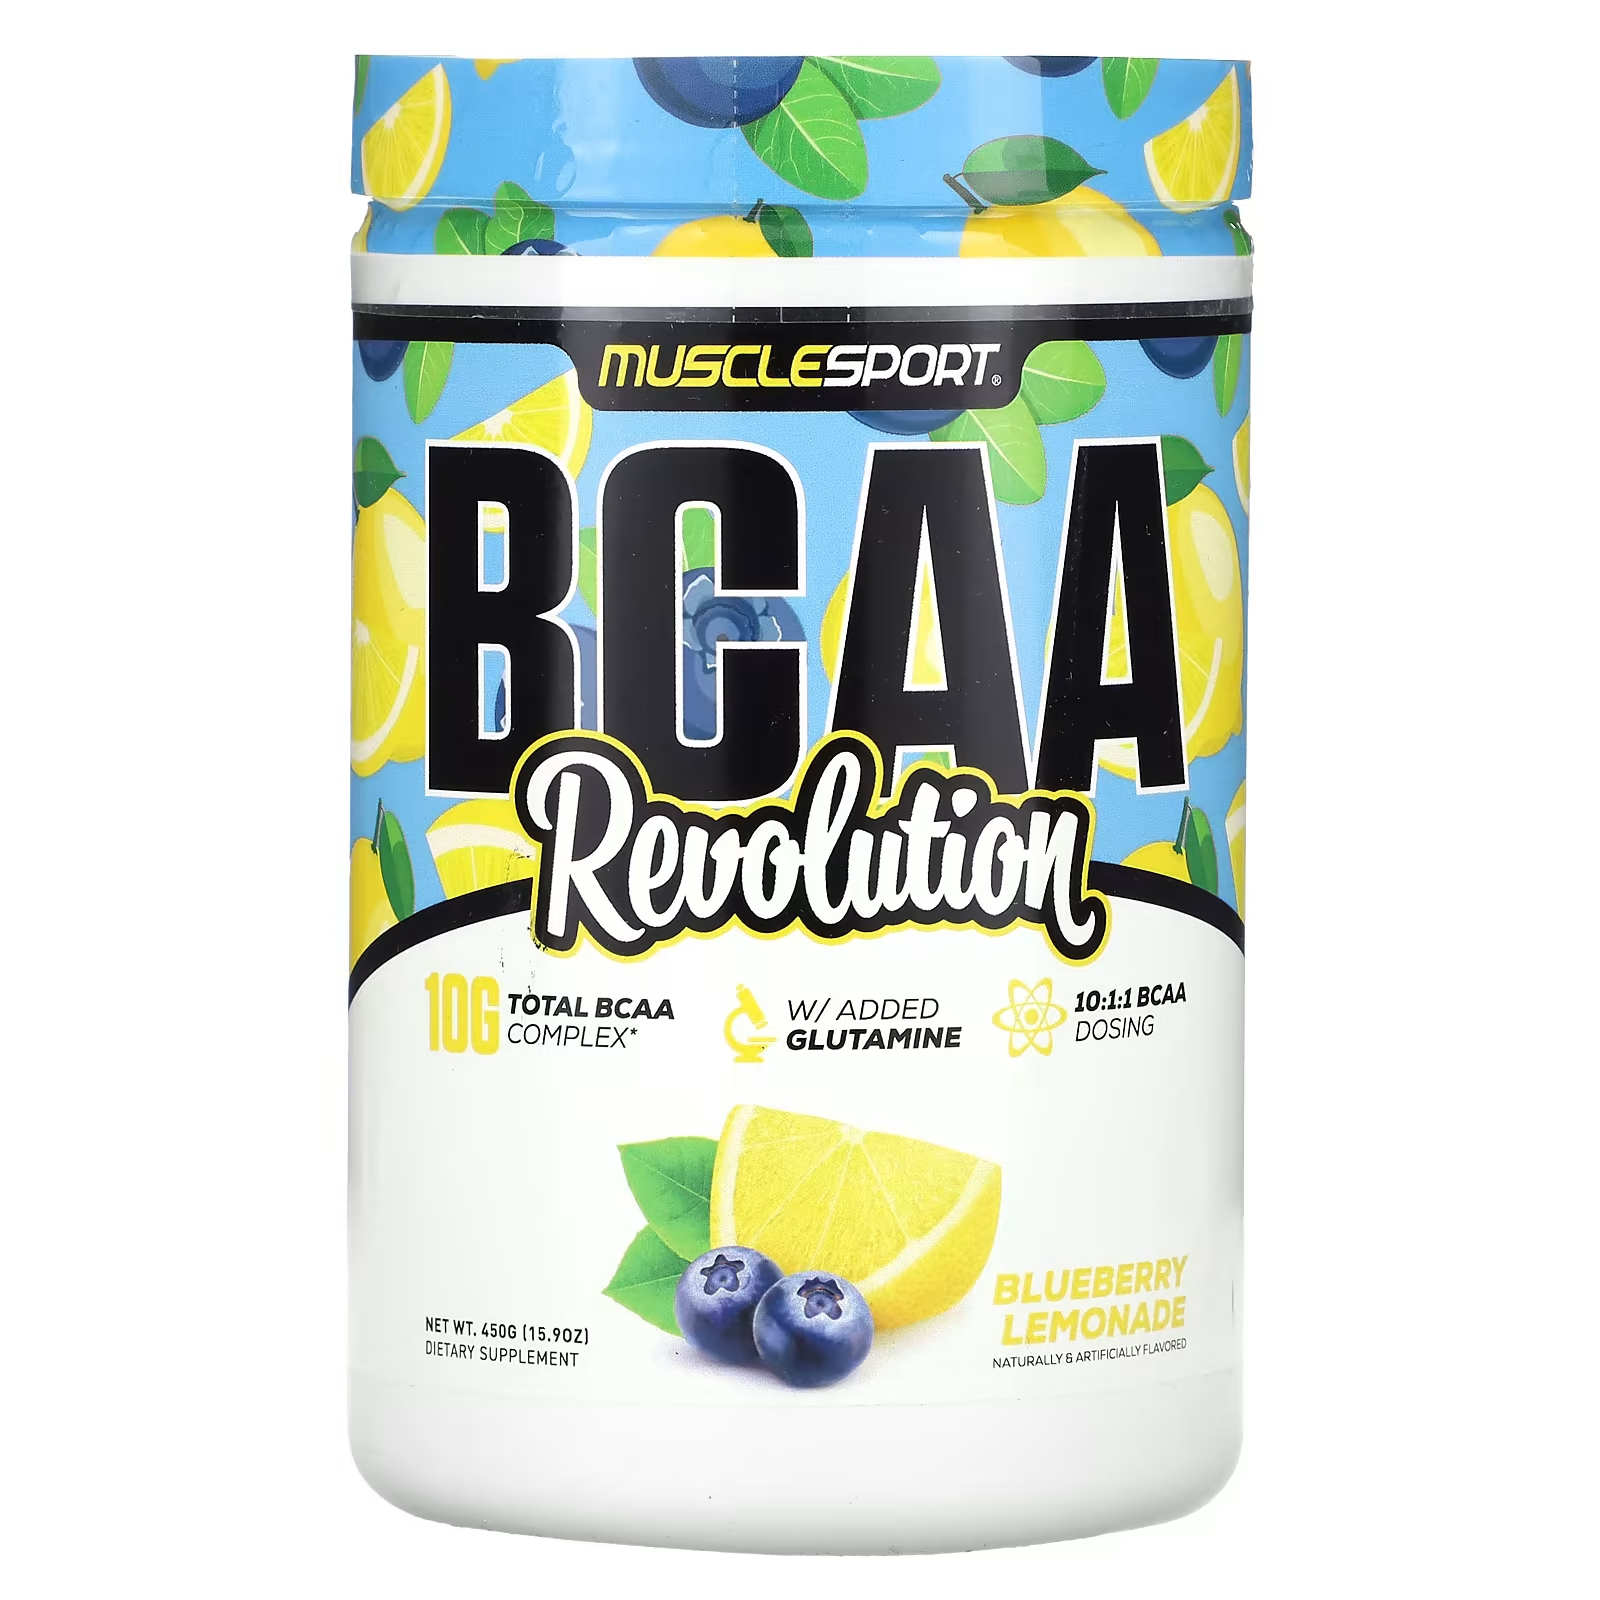 Пищевая добавка MuscleSport BCAA Revolution черничный лимонад, 450 г цена и фото